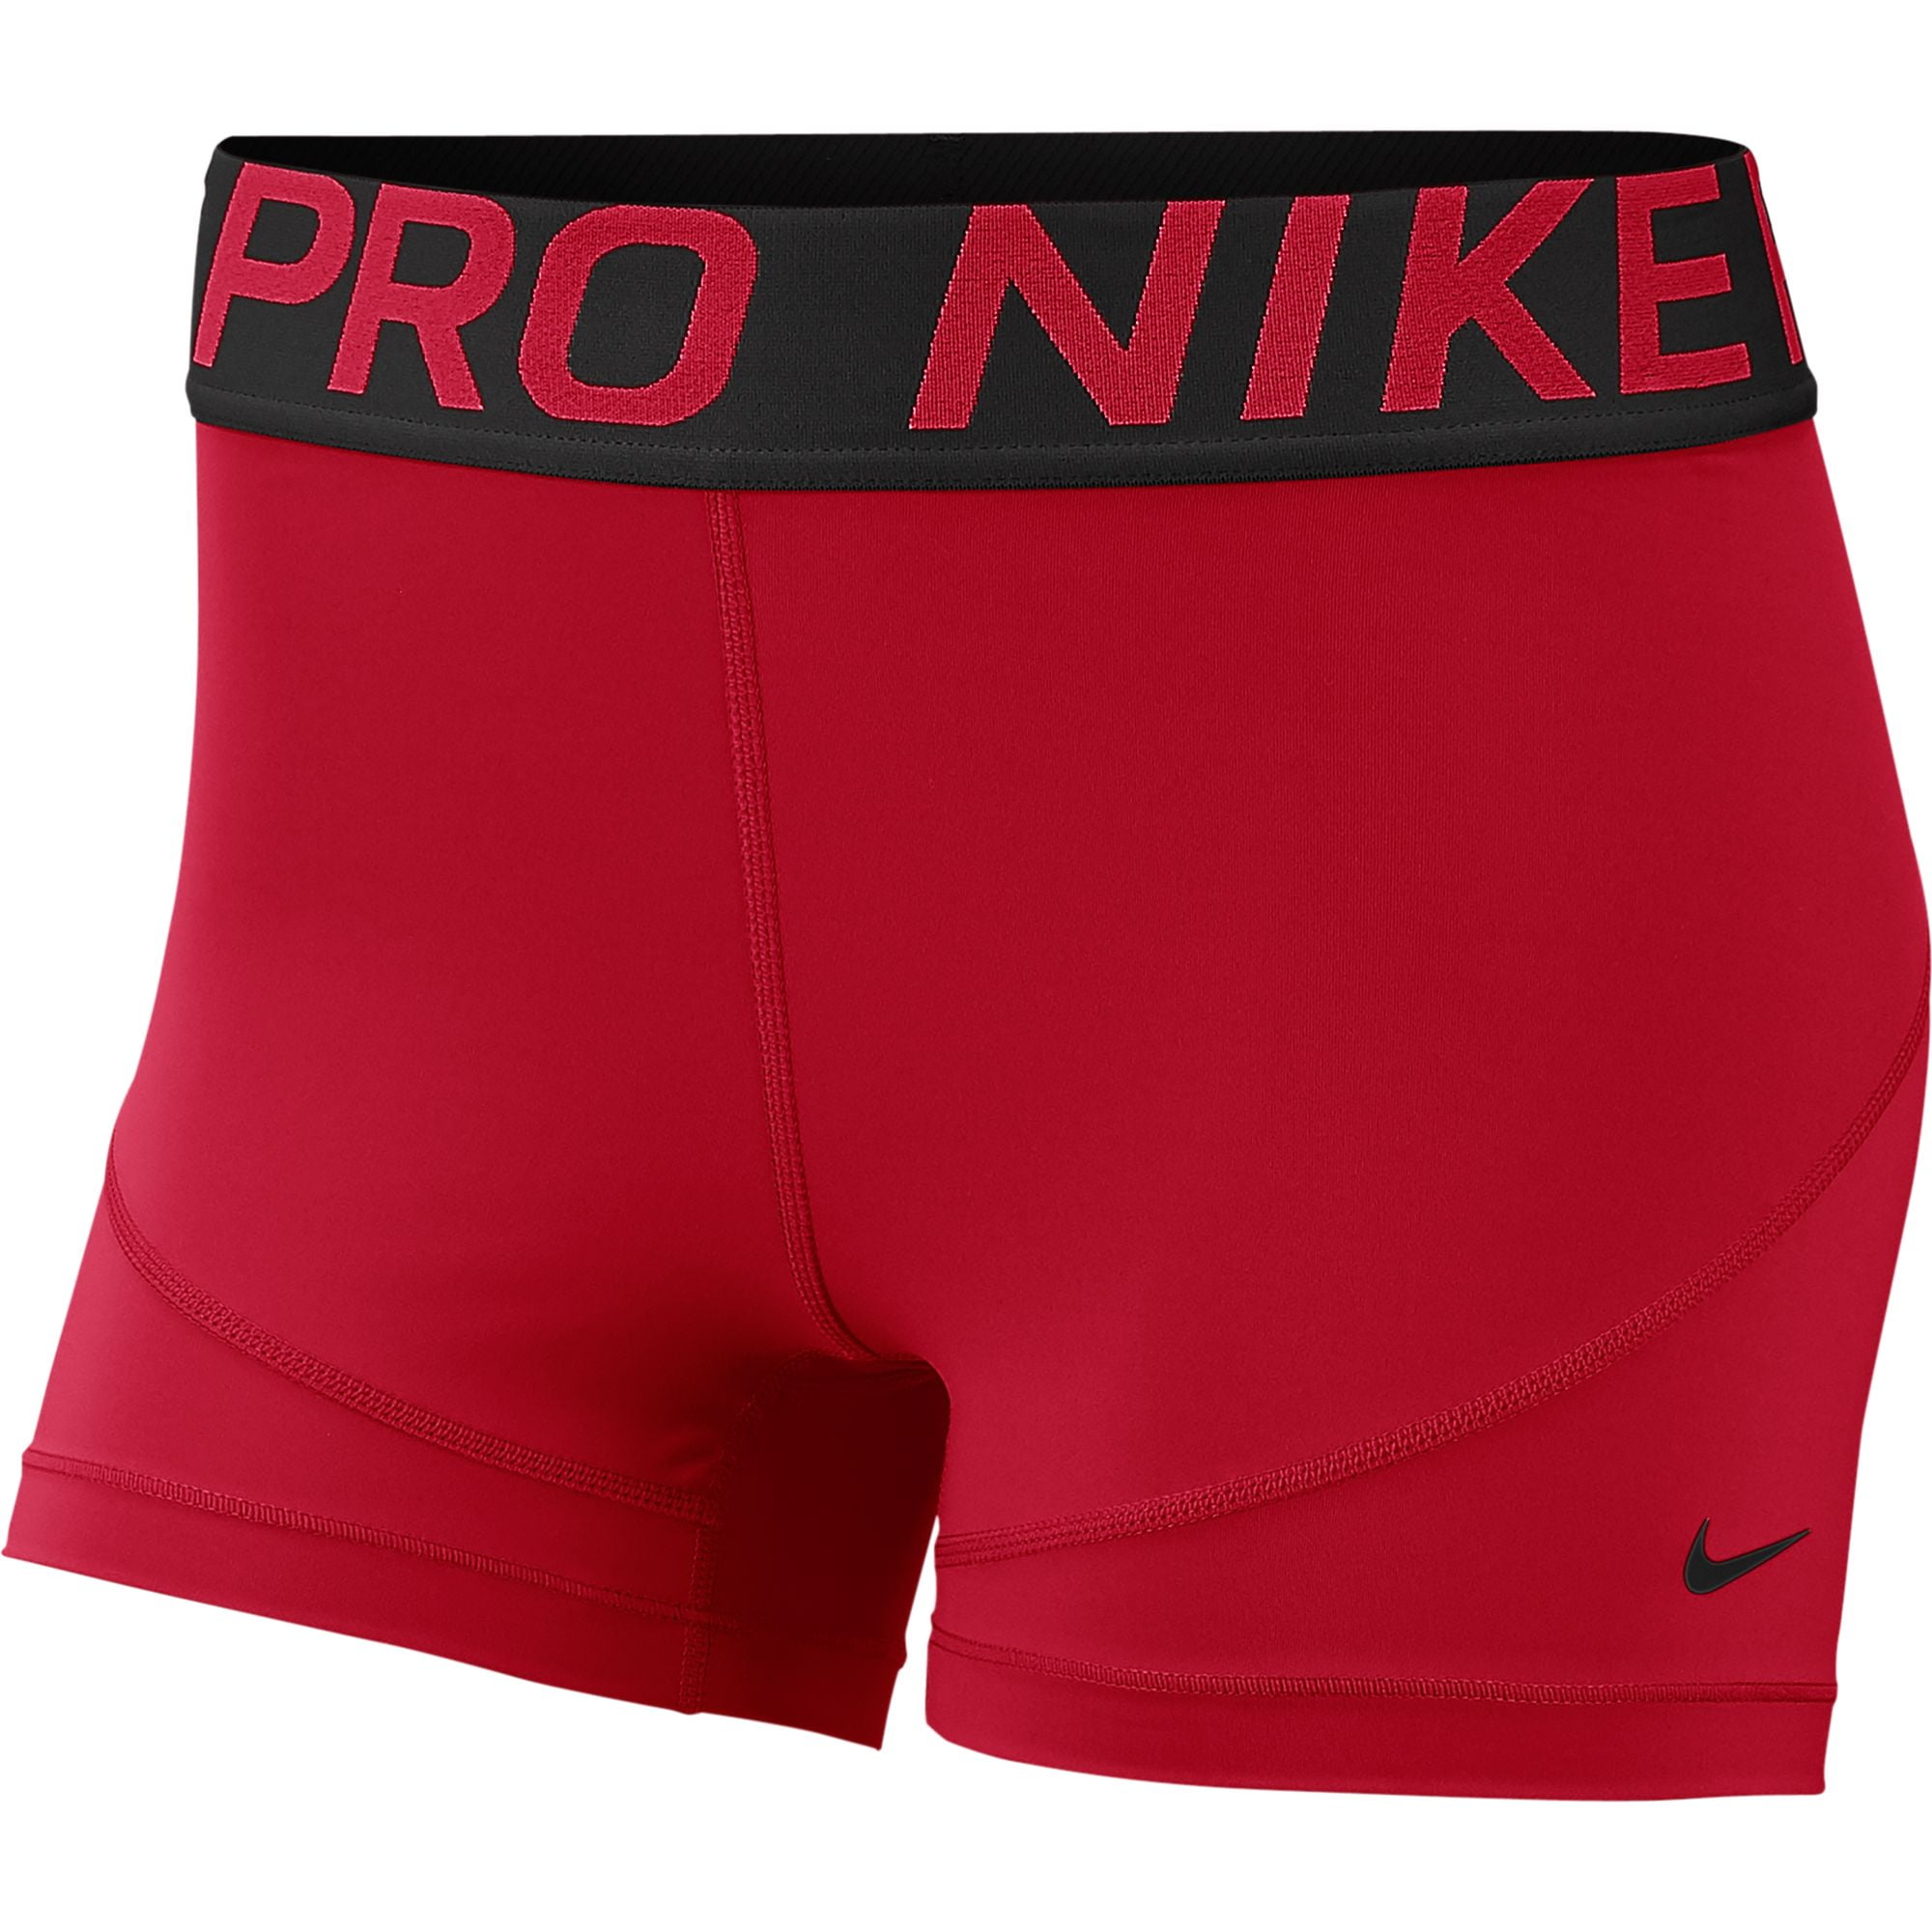 Short dick man radio. Nike Pro shorts. Шорты Nike красные. Спортивные шорты найк красные. Костюм найк для волейбола.